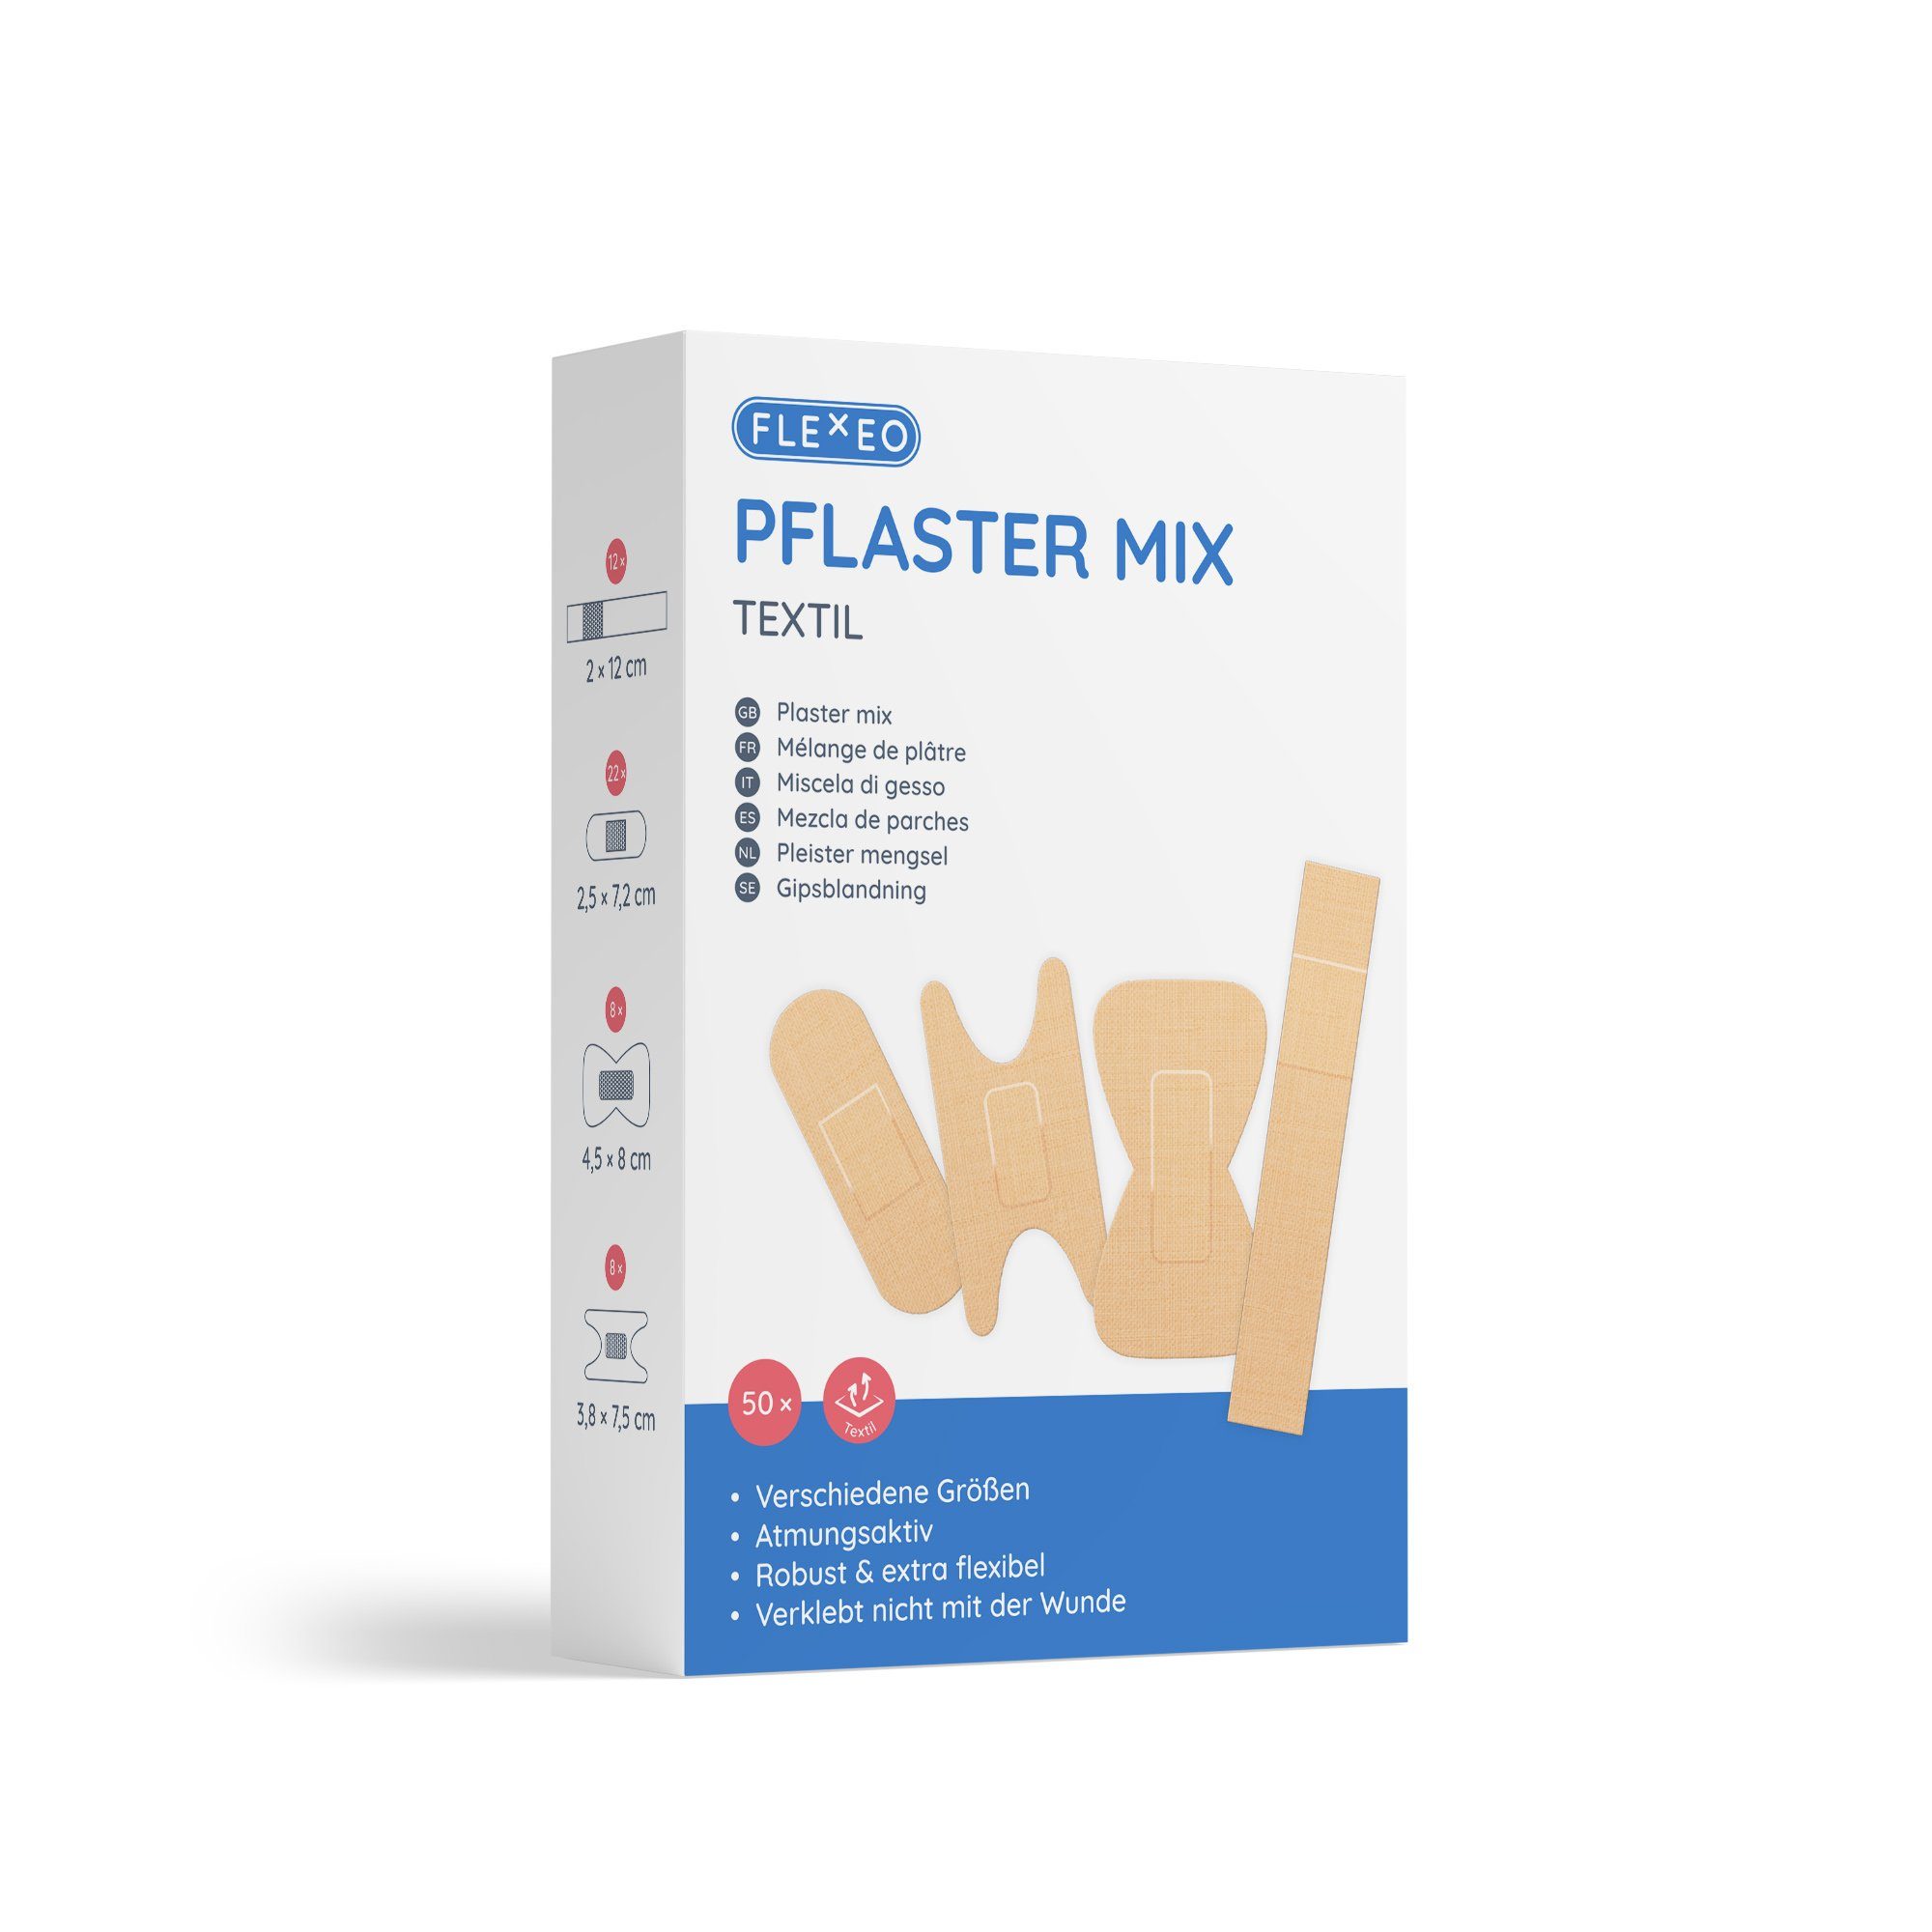 FLEXEO Wundpflaster Pflaster Mix (50 St), Pflasterstrips textil beige, 50 Stk